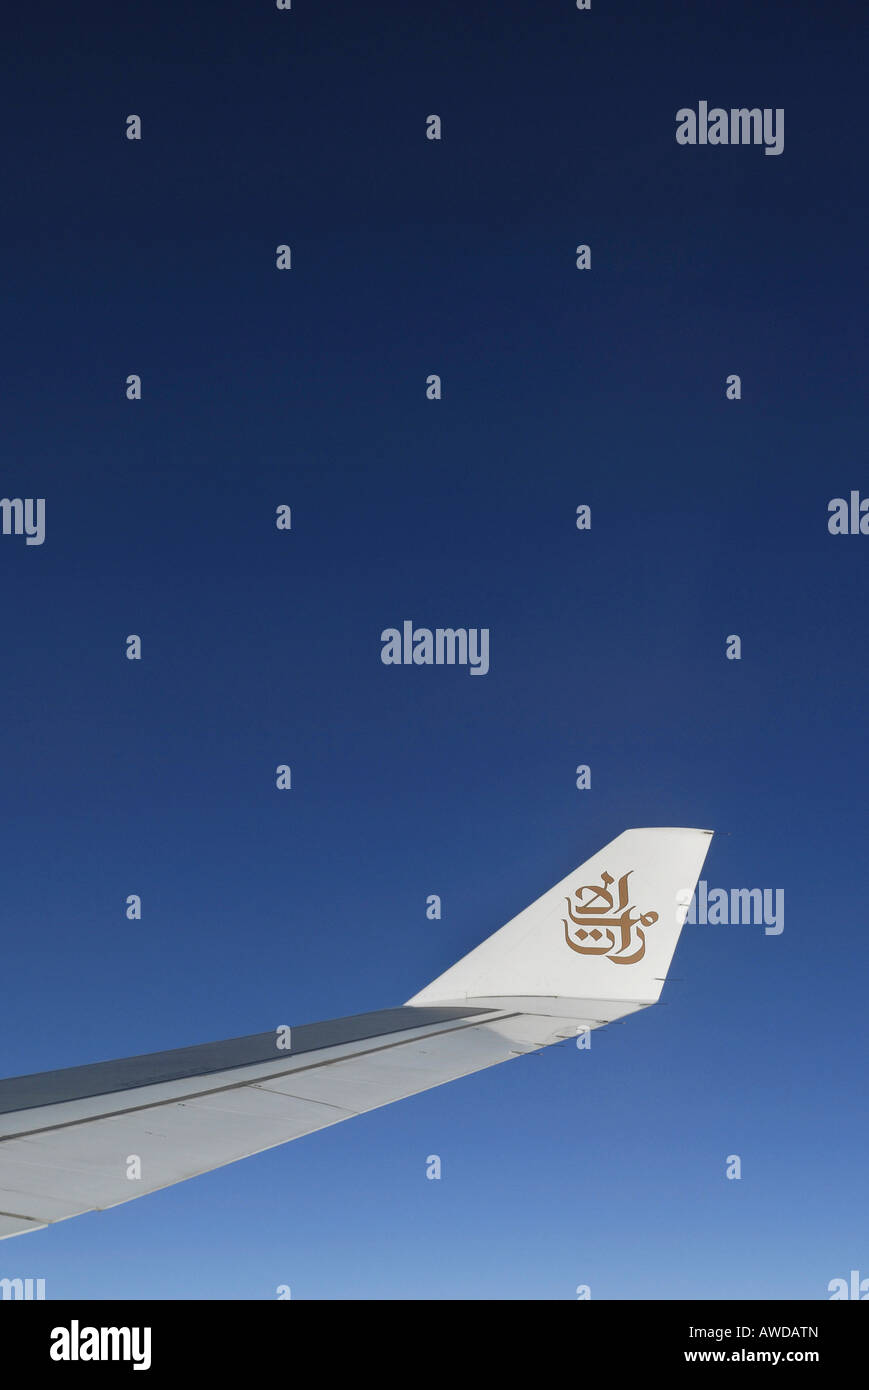 Aile d'un avion Airbus 330-200 de la compagnie aérienne 'Unis' et ciel bleu Banque D'Images